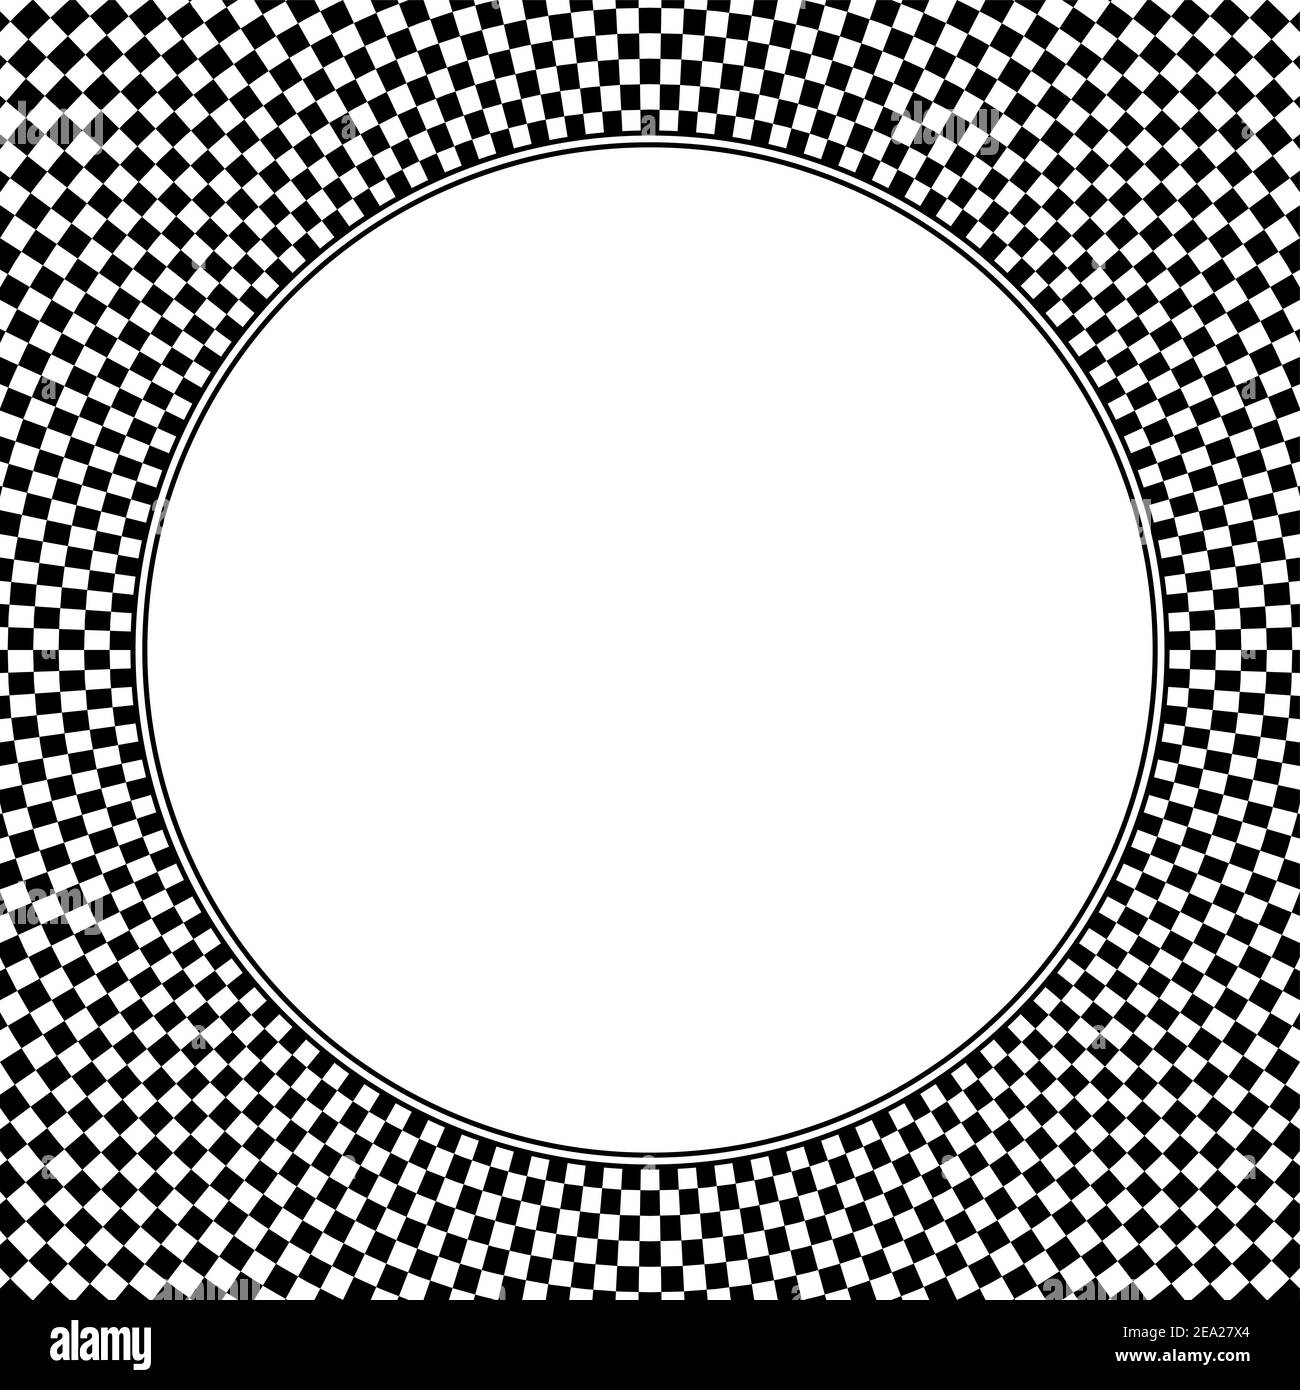 Fondo de patrón de tablero de ajedrez en forma cuadrada, con un círculo blanco en el centro. Textura de patrón a cuadros, hecha de cuadrados blancos y negros. Foto de stock